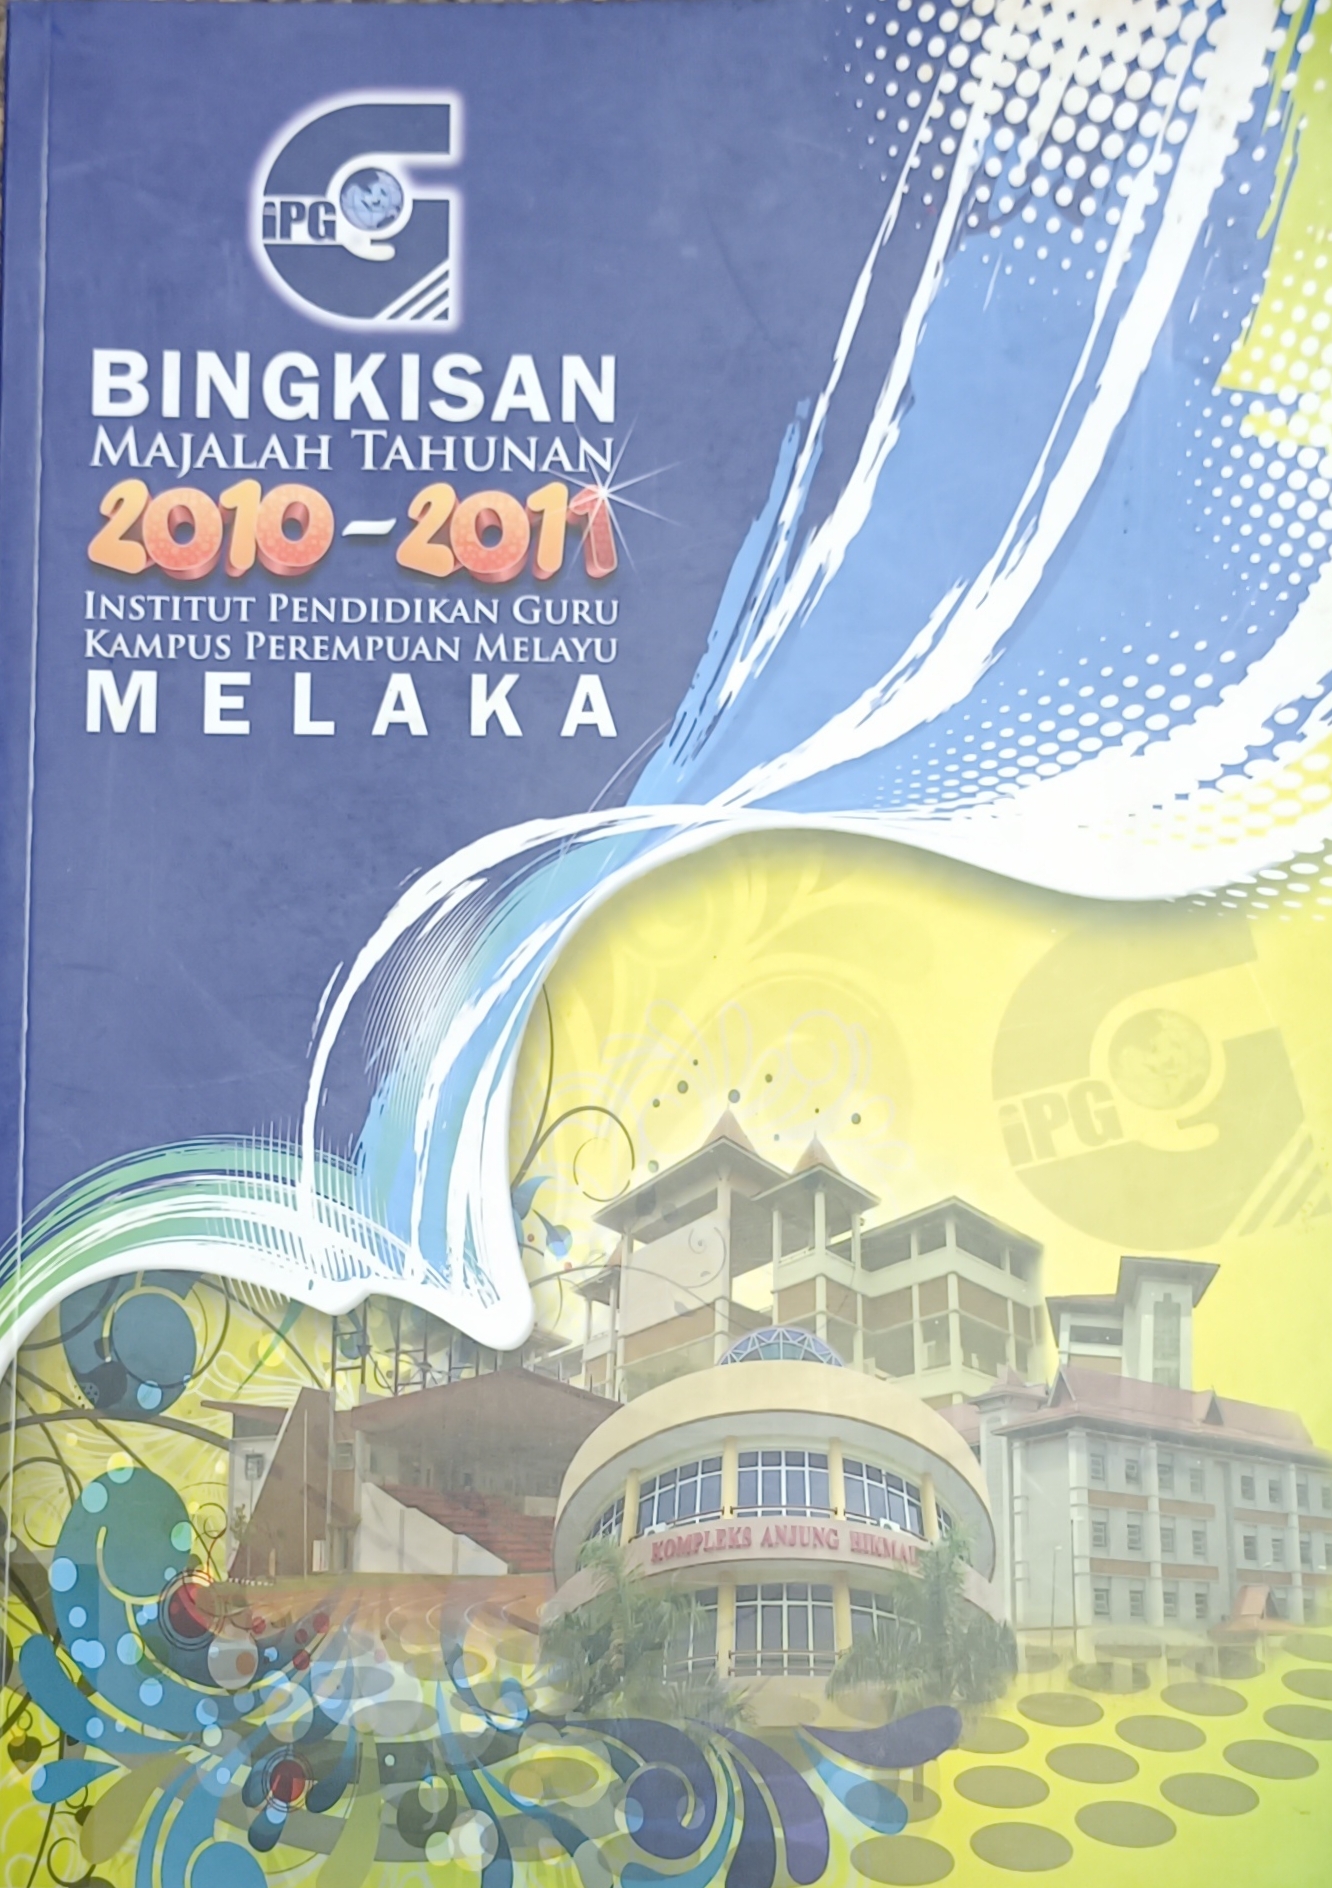 Cover image for Bingkisan Majalah Tahunan 2010-2011 bibliographic